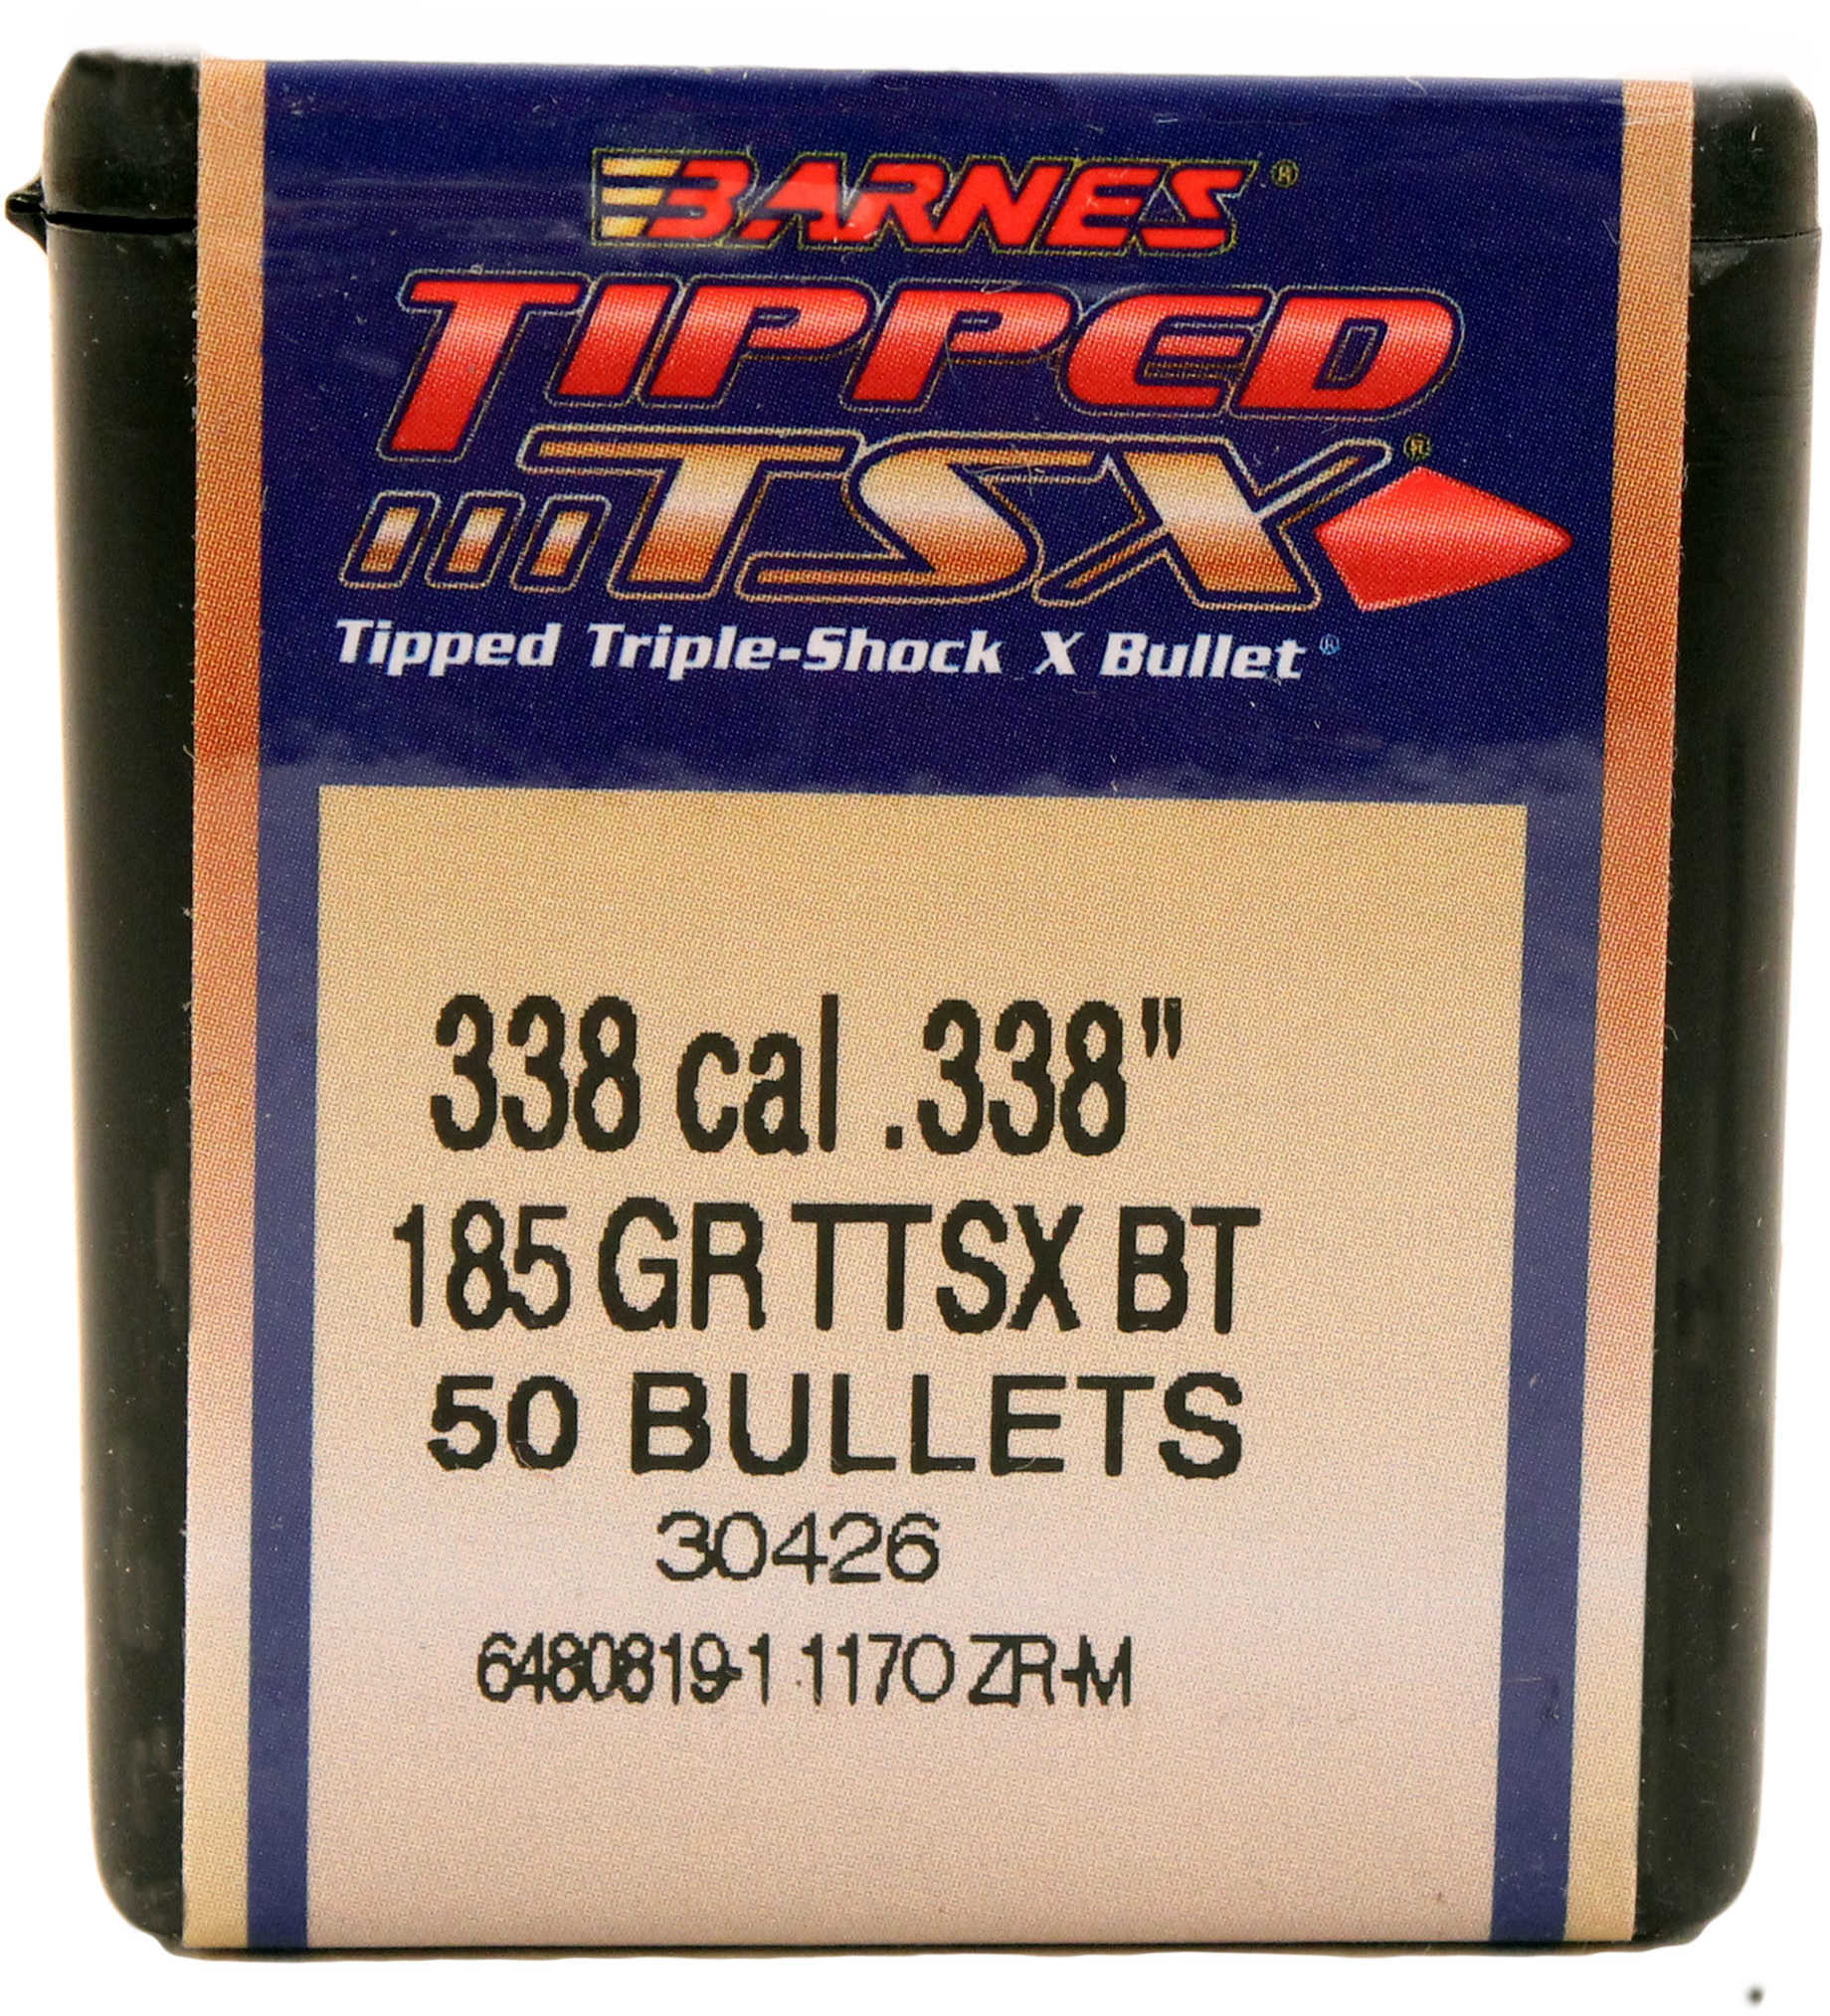 Barnes 338 Tipped Triple Shock X Bullets 185 Gr. Per 50 Md: 33874